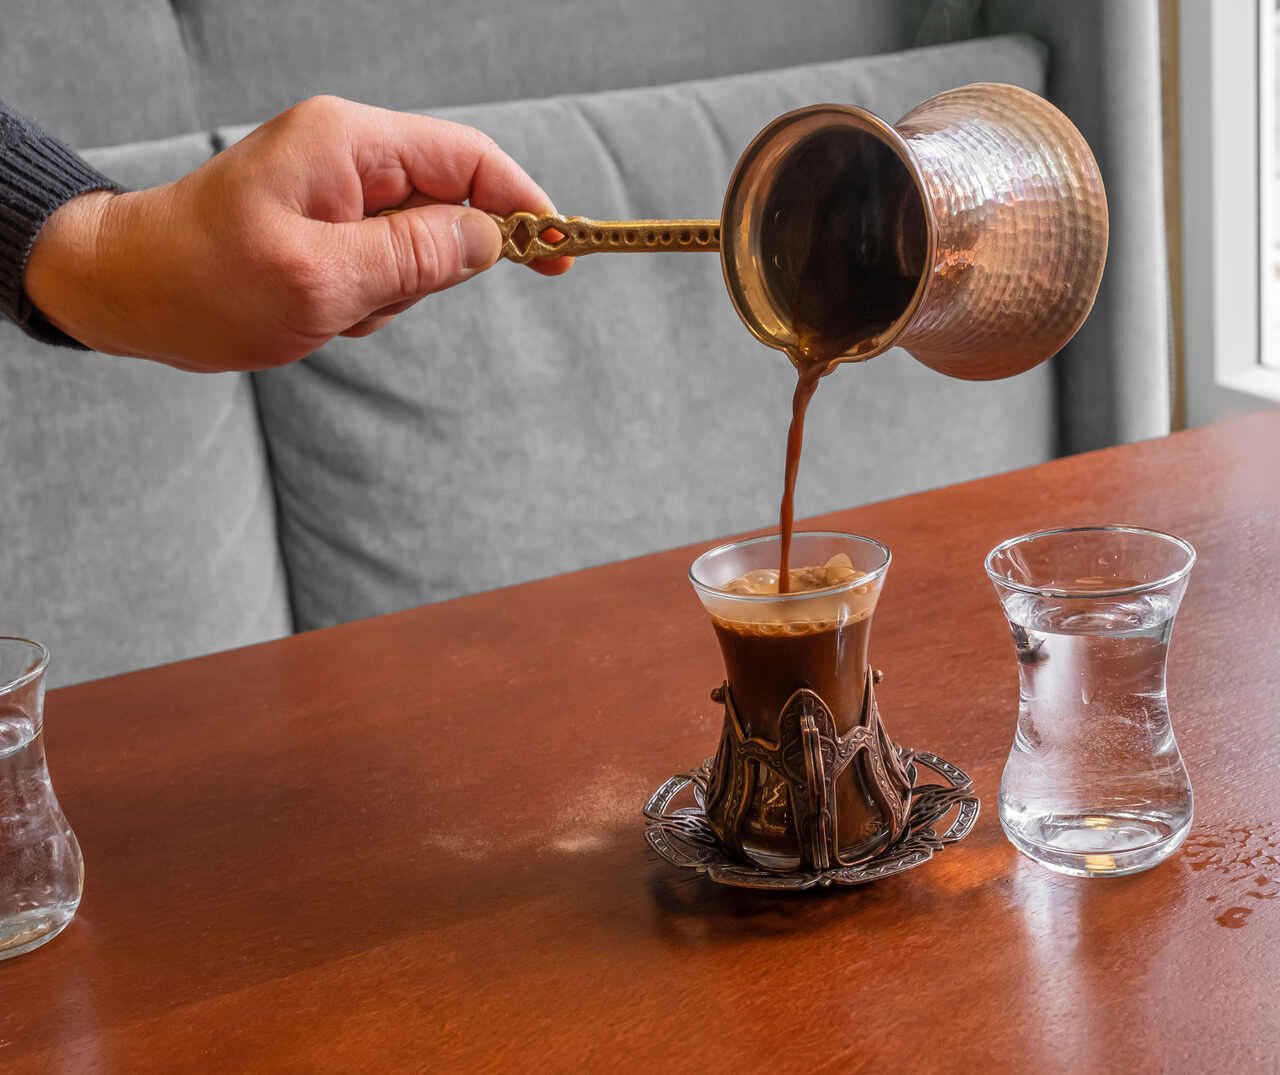 çay bardağında servis edilen süvari kahve ve su